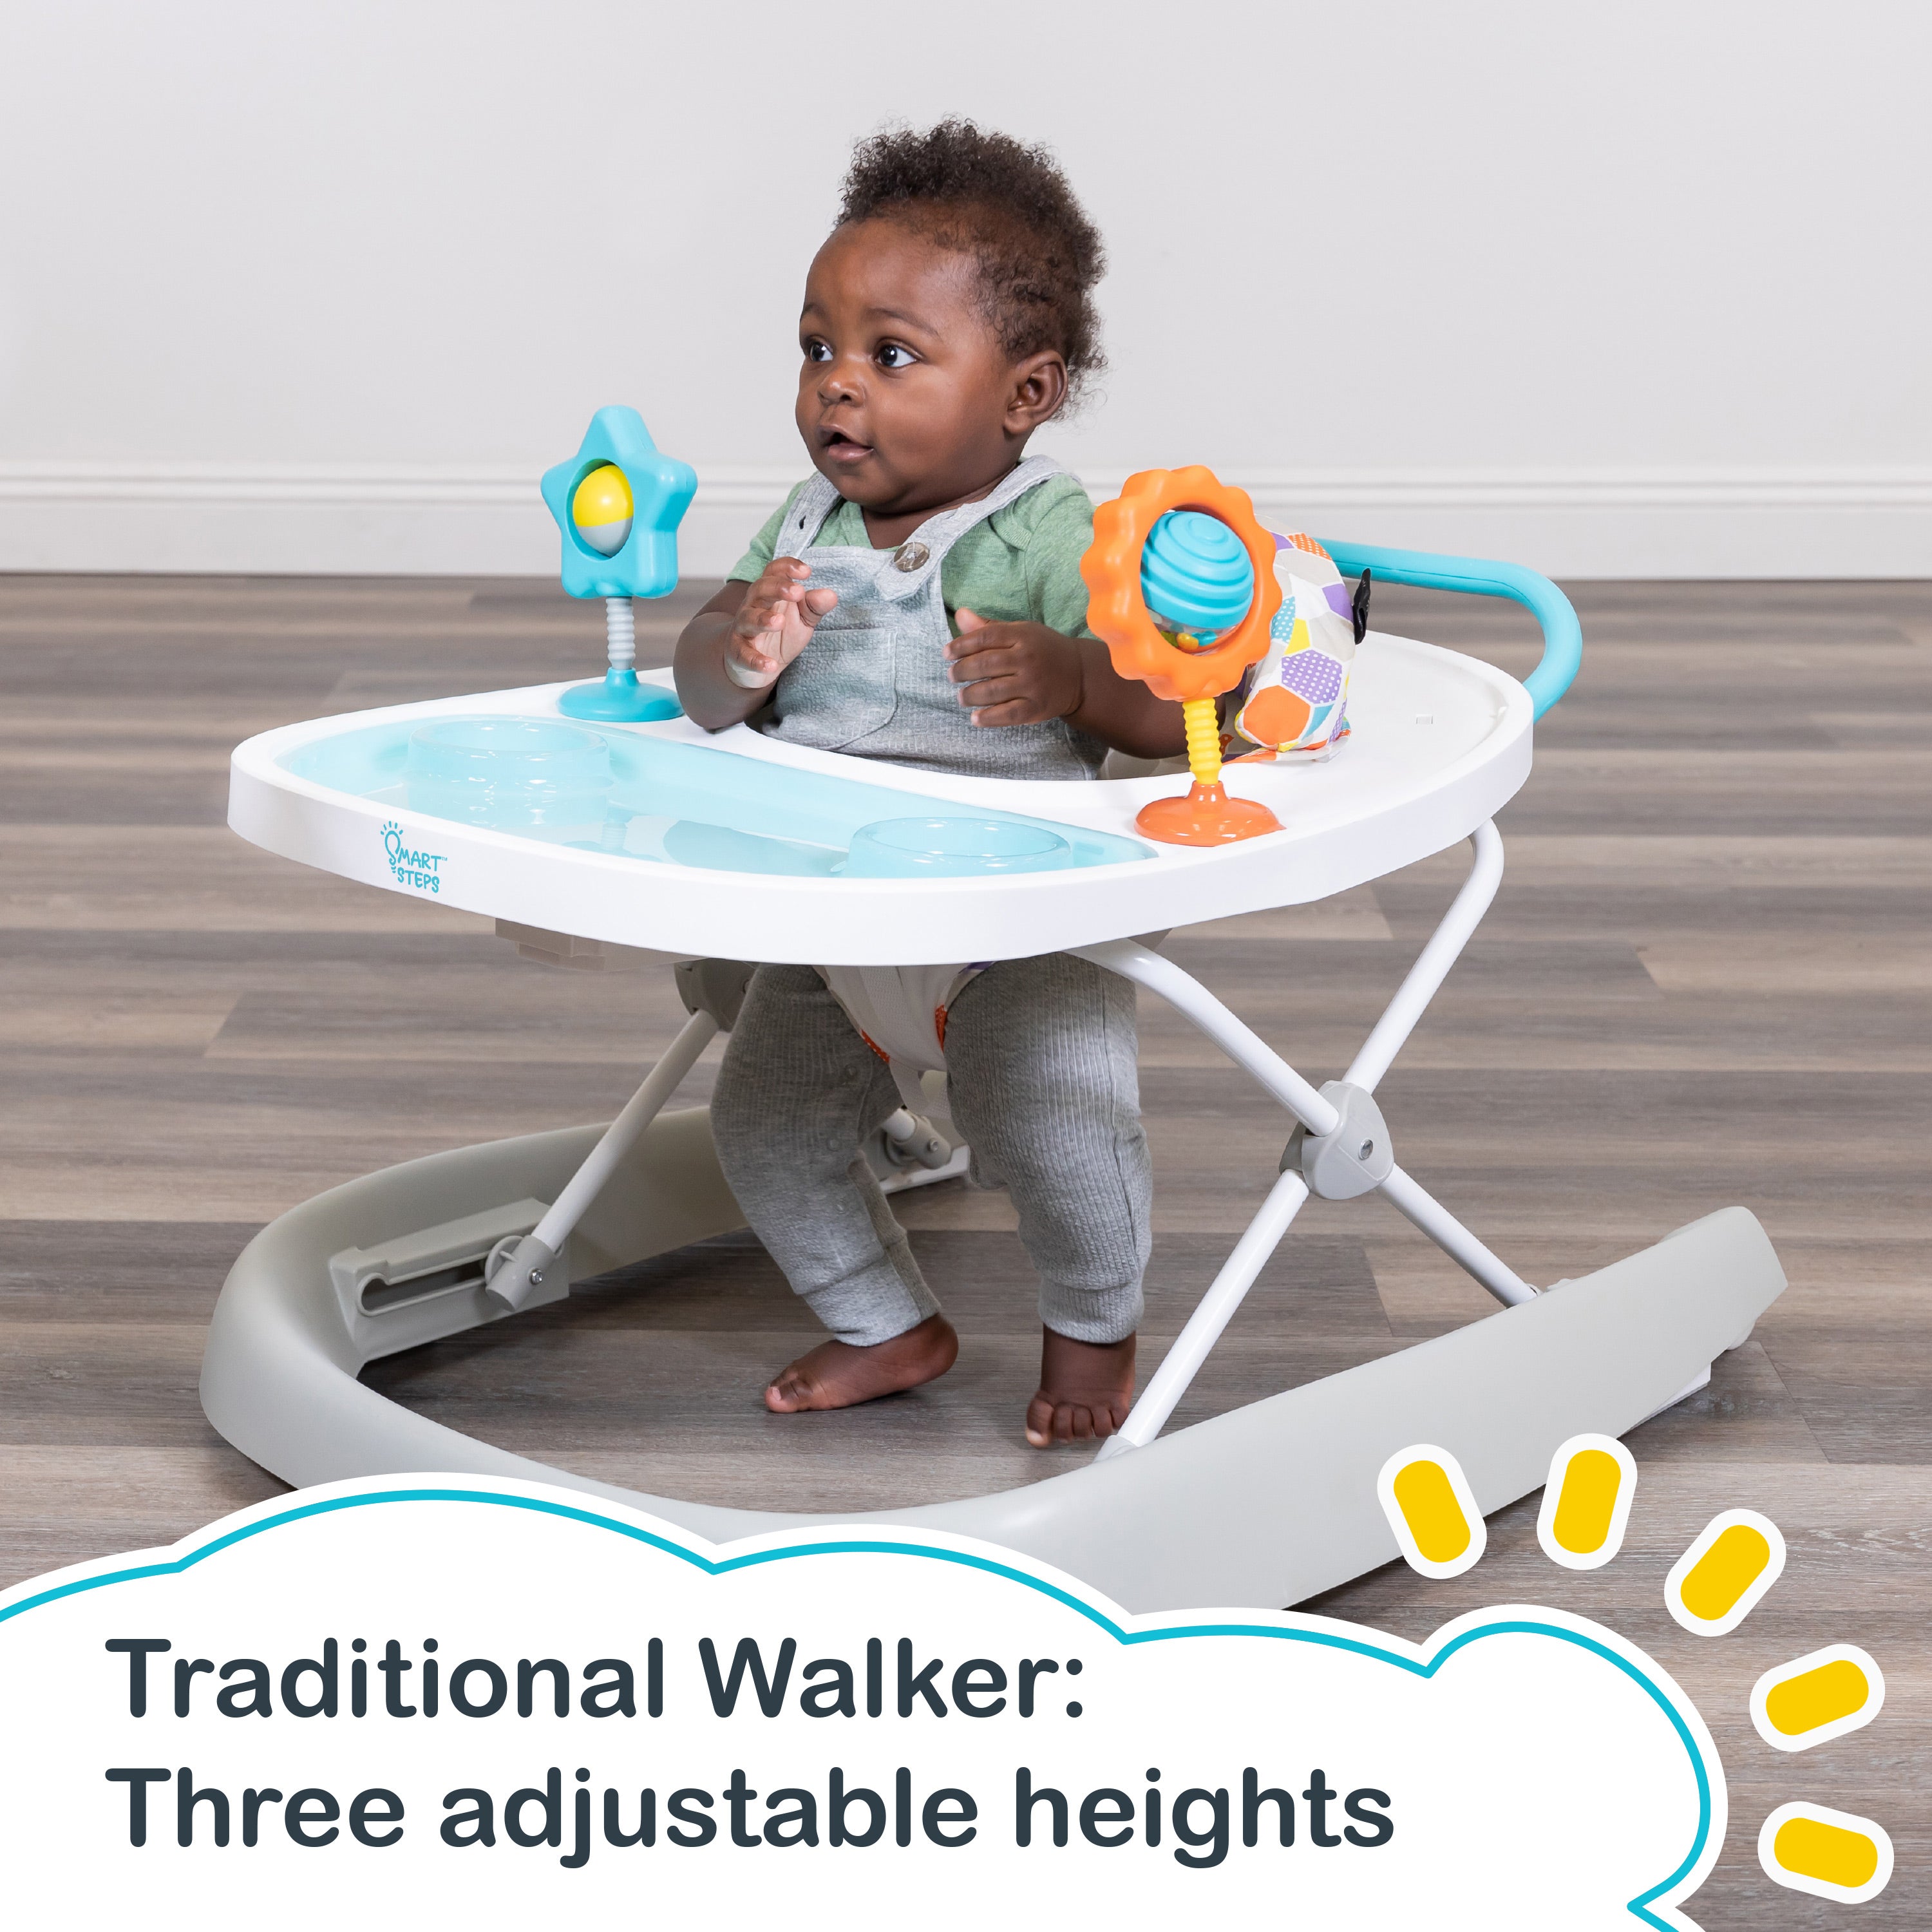 Smart Steps by Baby Trend Dine N' Play 3-in-1 Feeding Walker